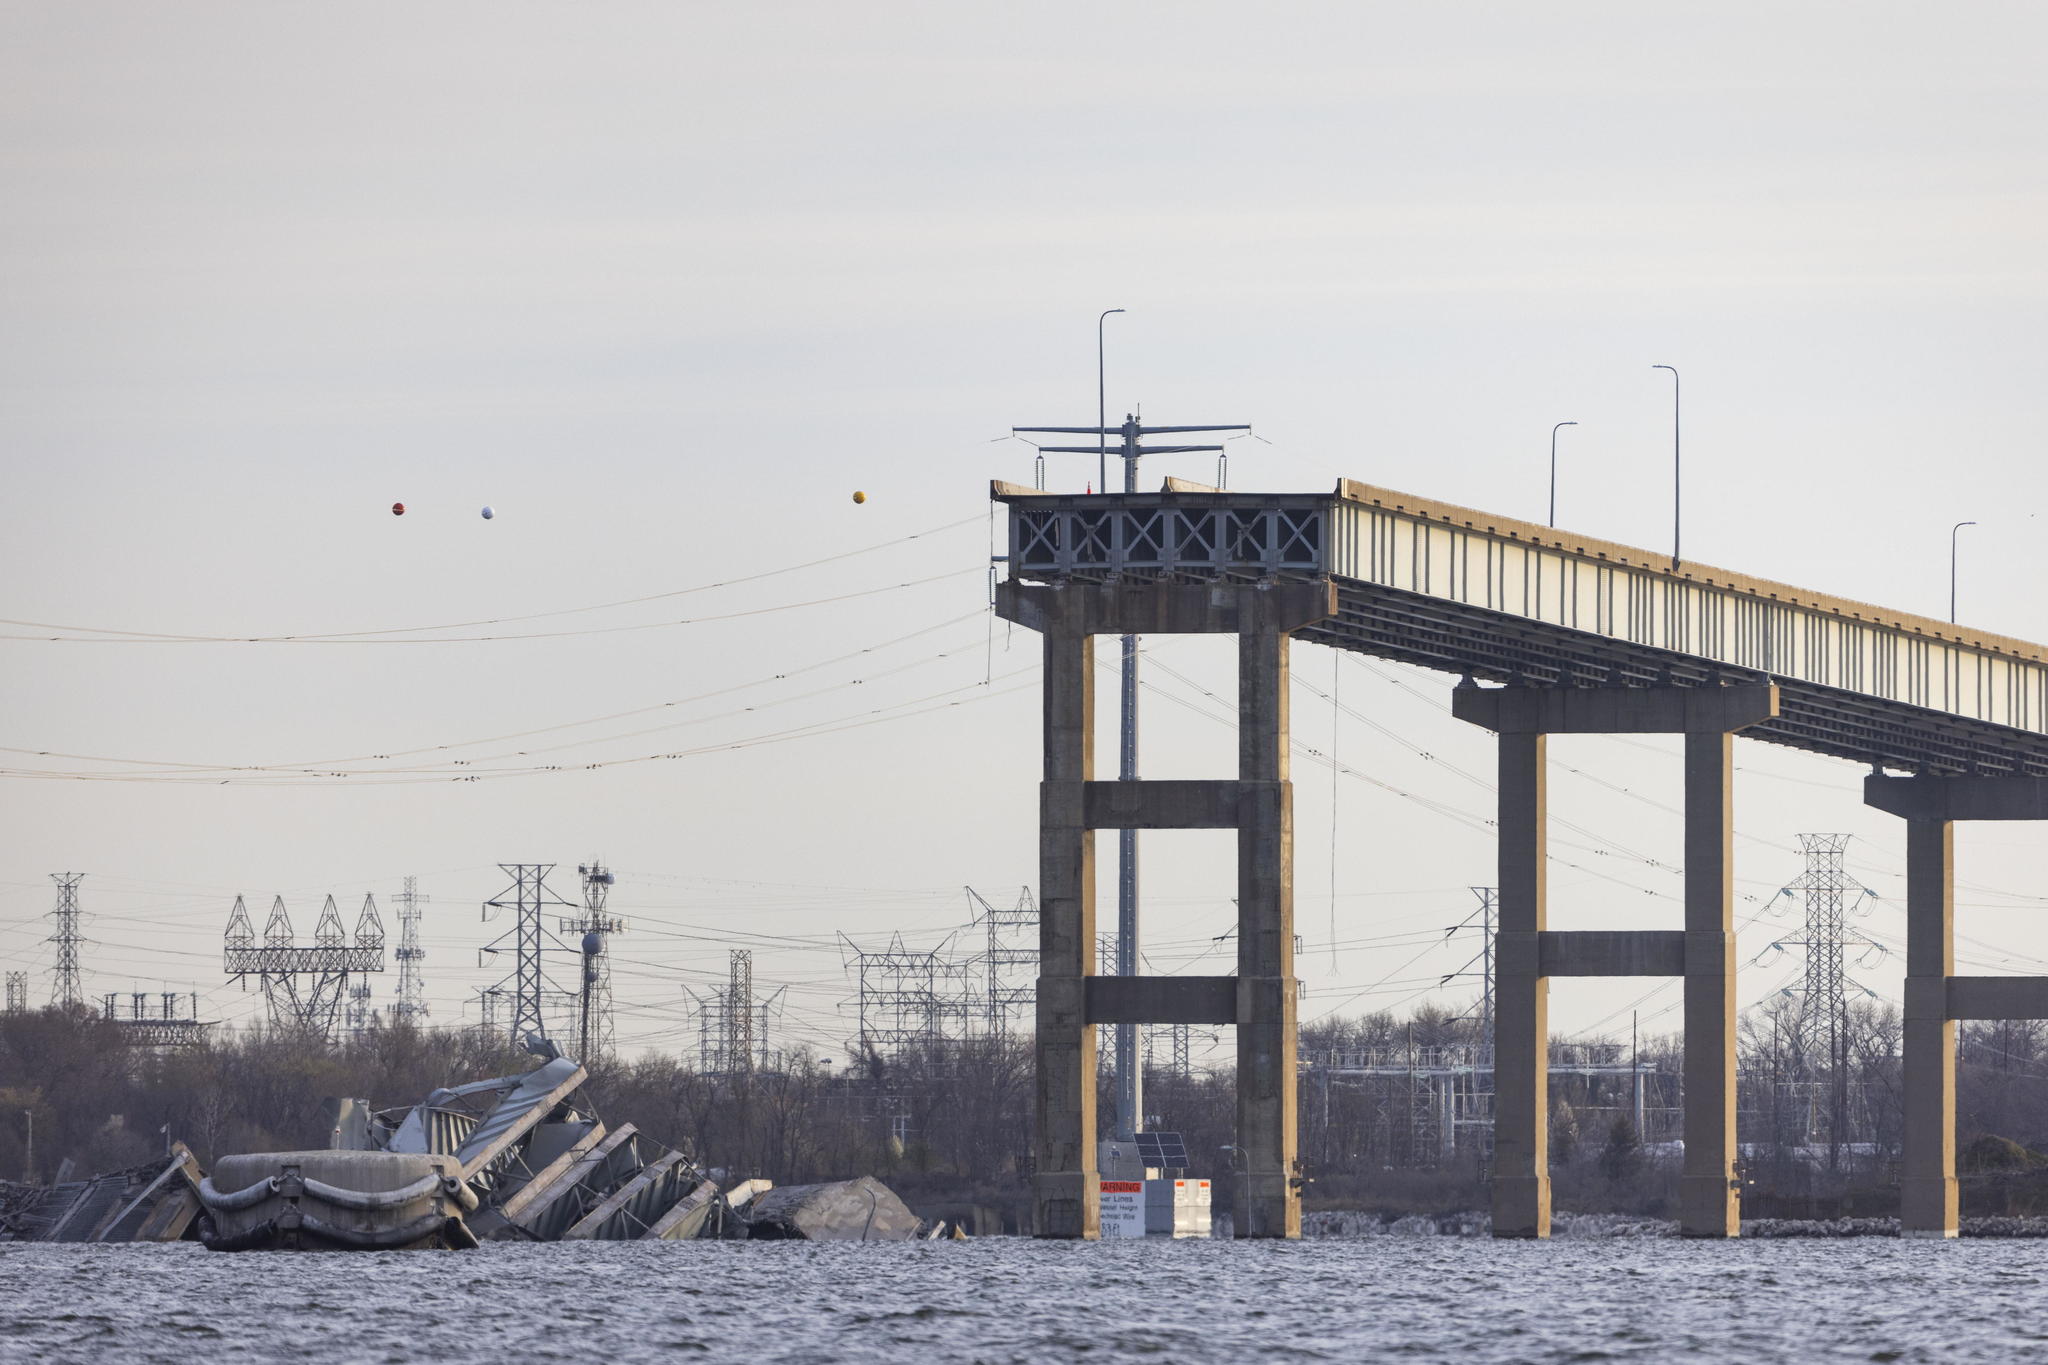 Cunto dinero cost el puente de Baltimore diseado por Scott Key que se acaba de derrumbar?